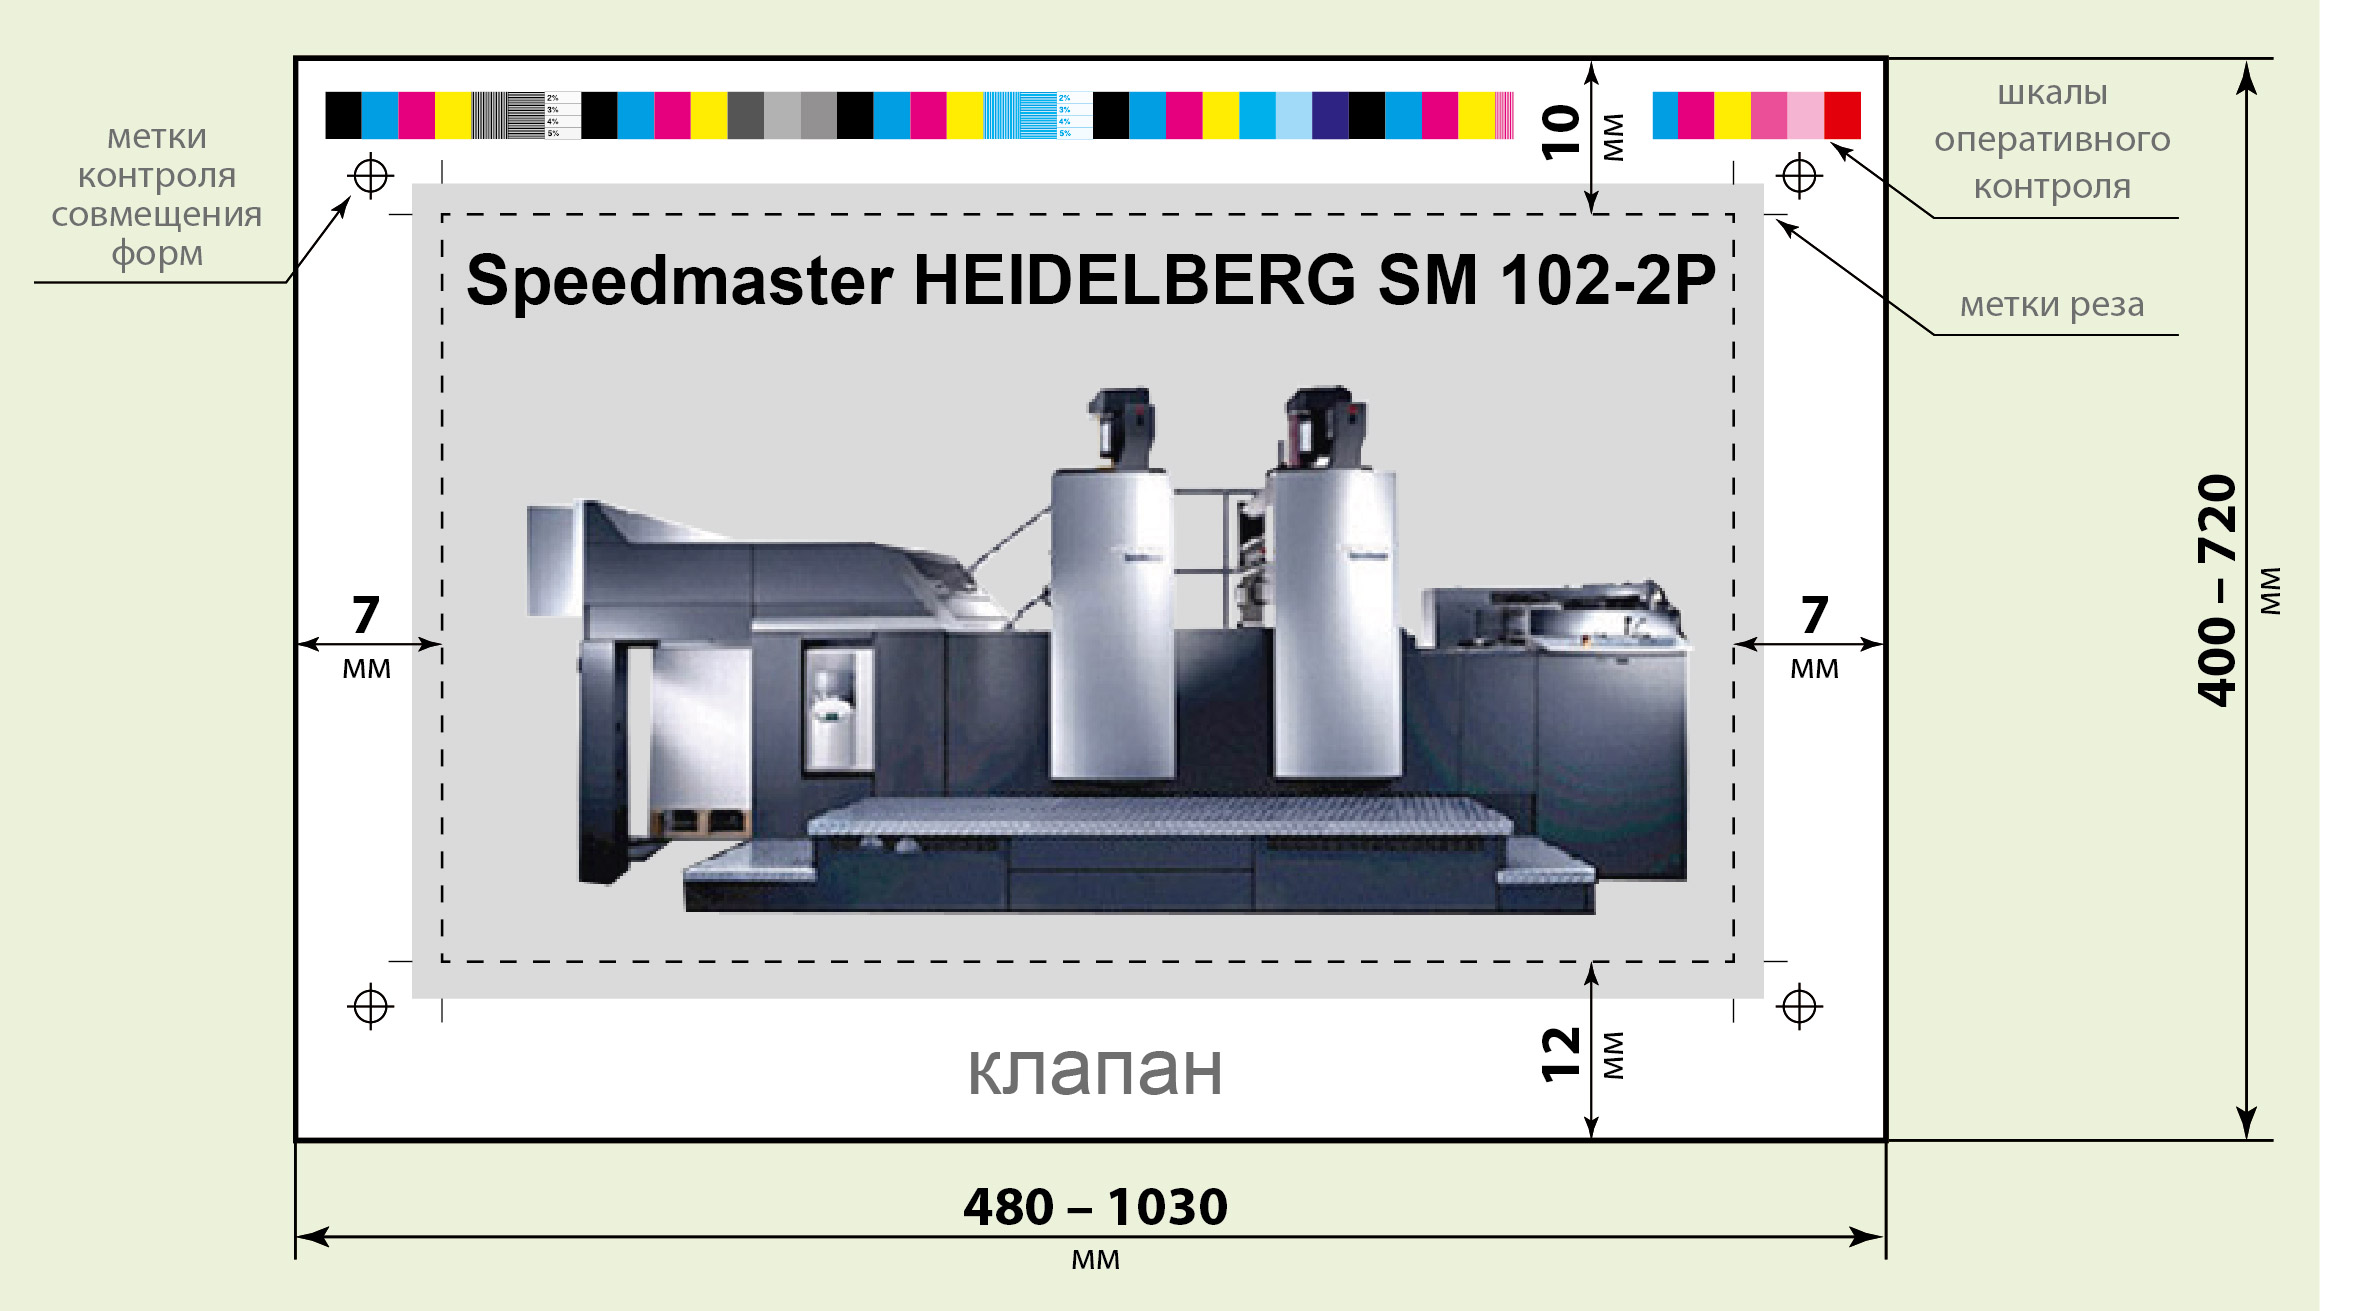 Схема печатного листа Speedmaster HEIDELBERG SM 102-2P типографии «Август Борг»